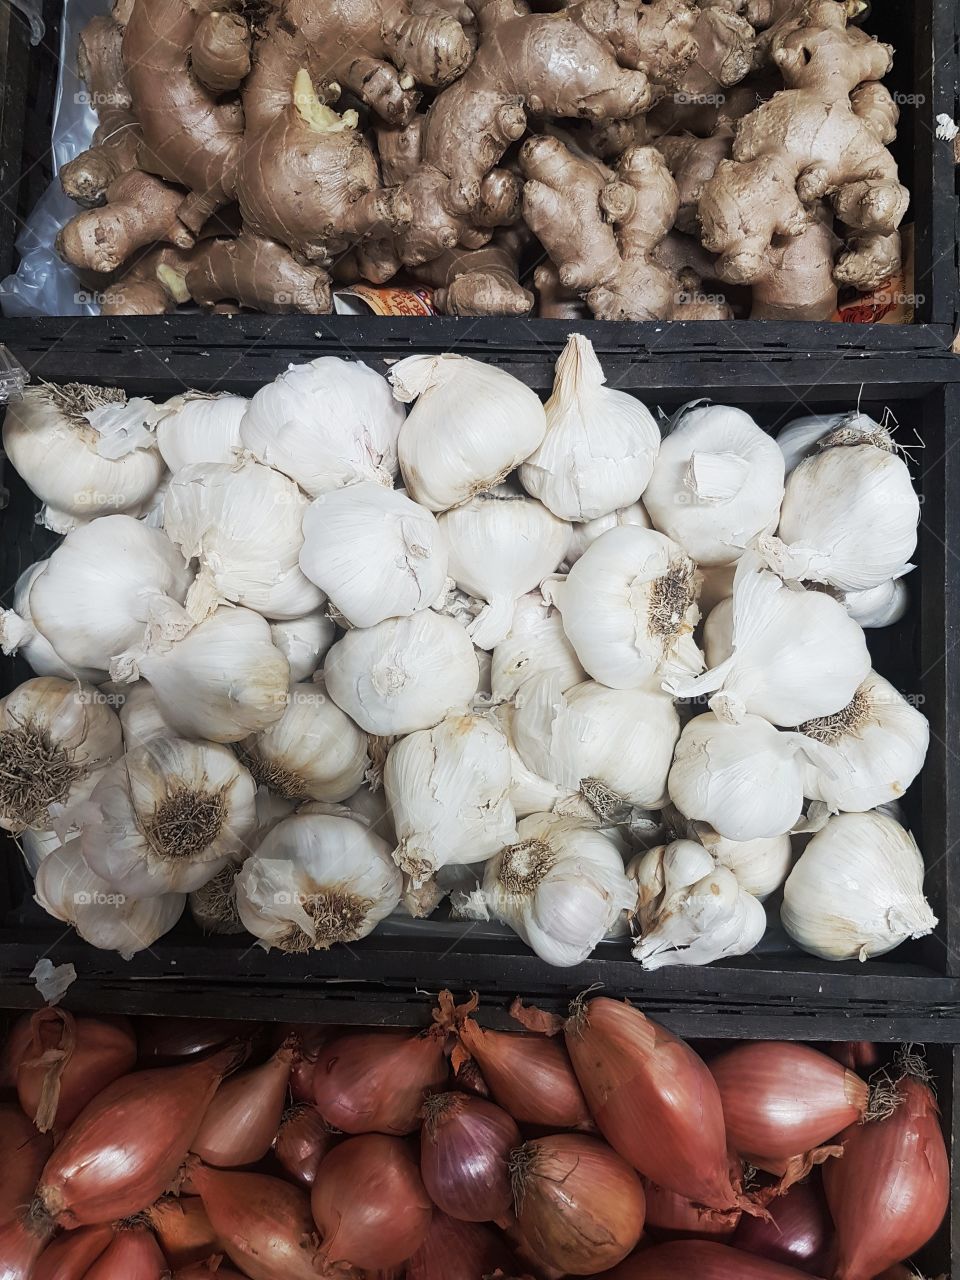 Garlic and ginger fresh at market stall